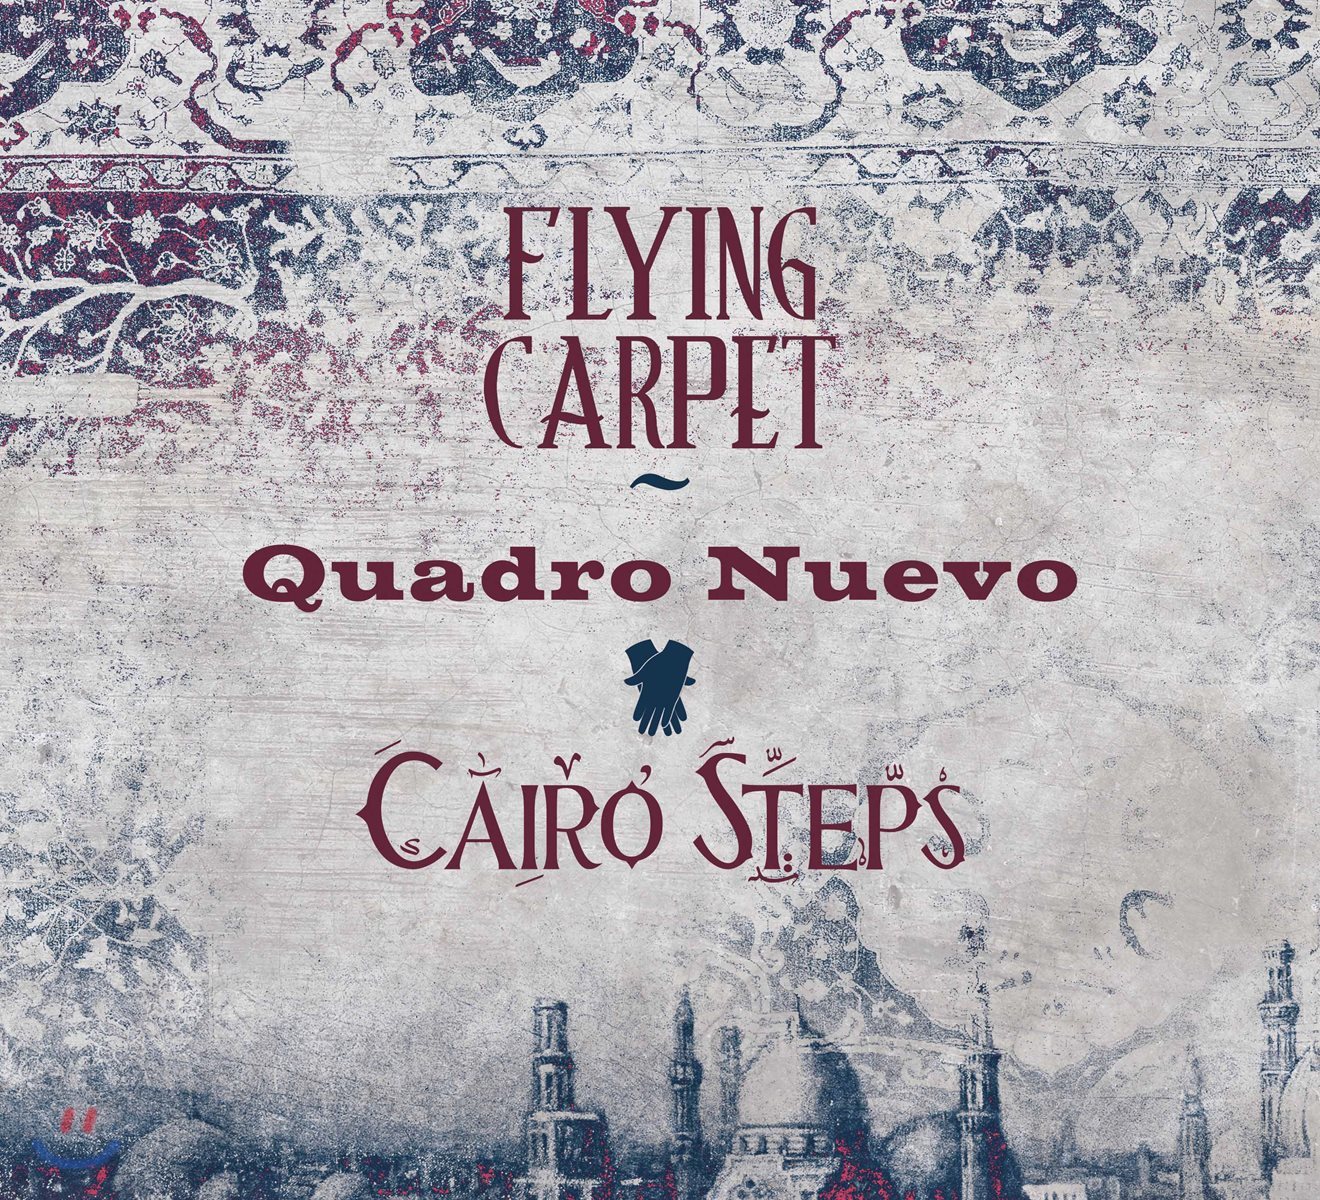 Quadro Nuevo / Cairo Steps (콰드로 누에보, 카이로 스텝스) - Flying Carpet